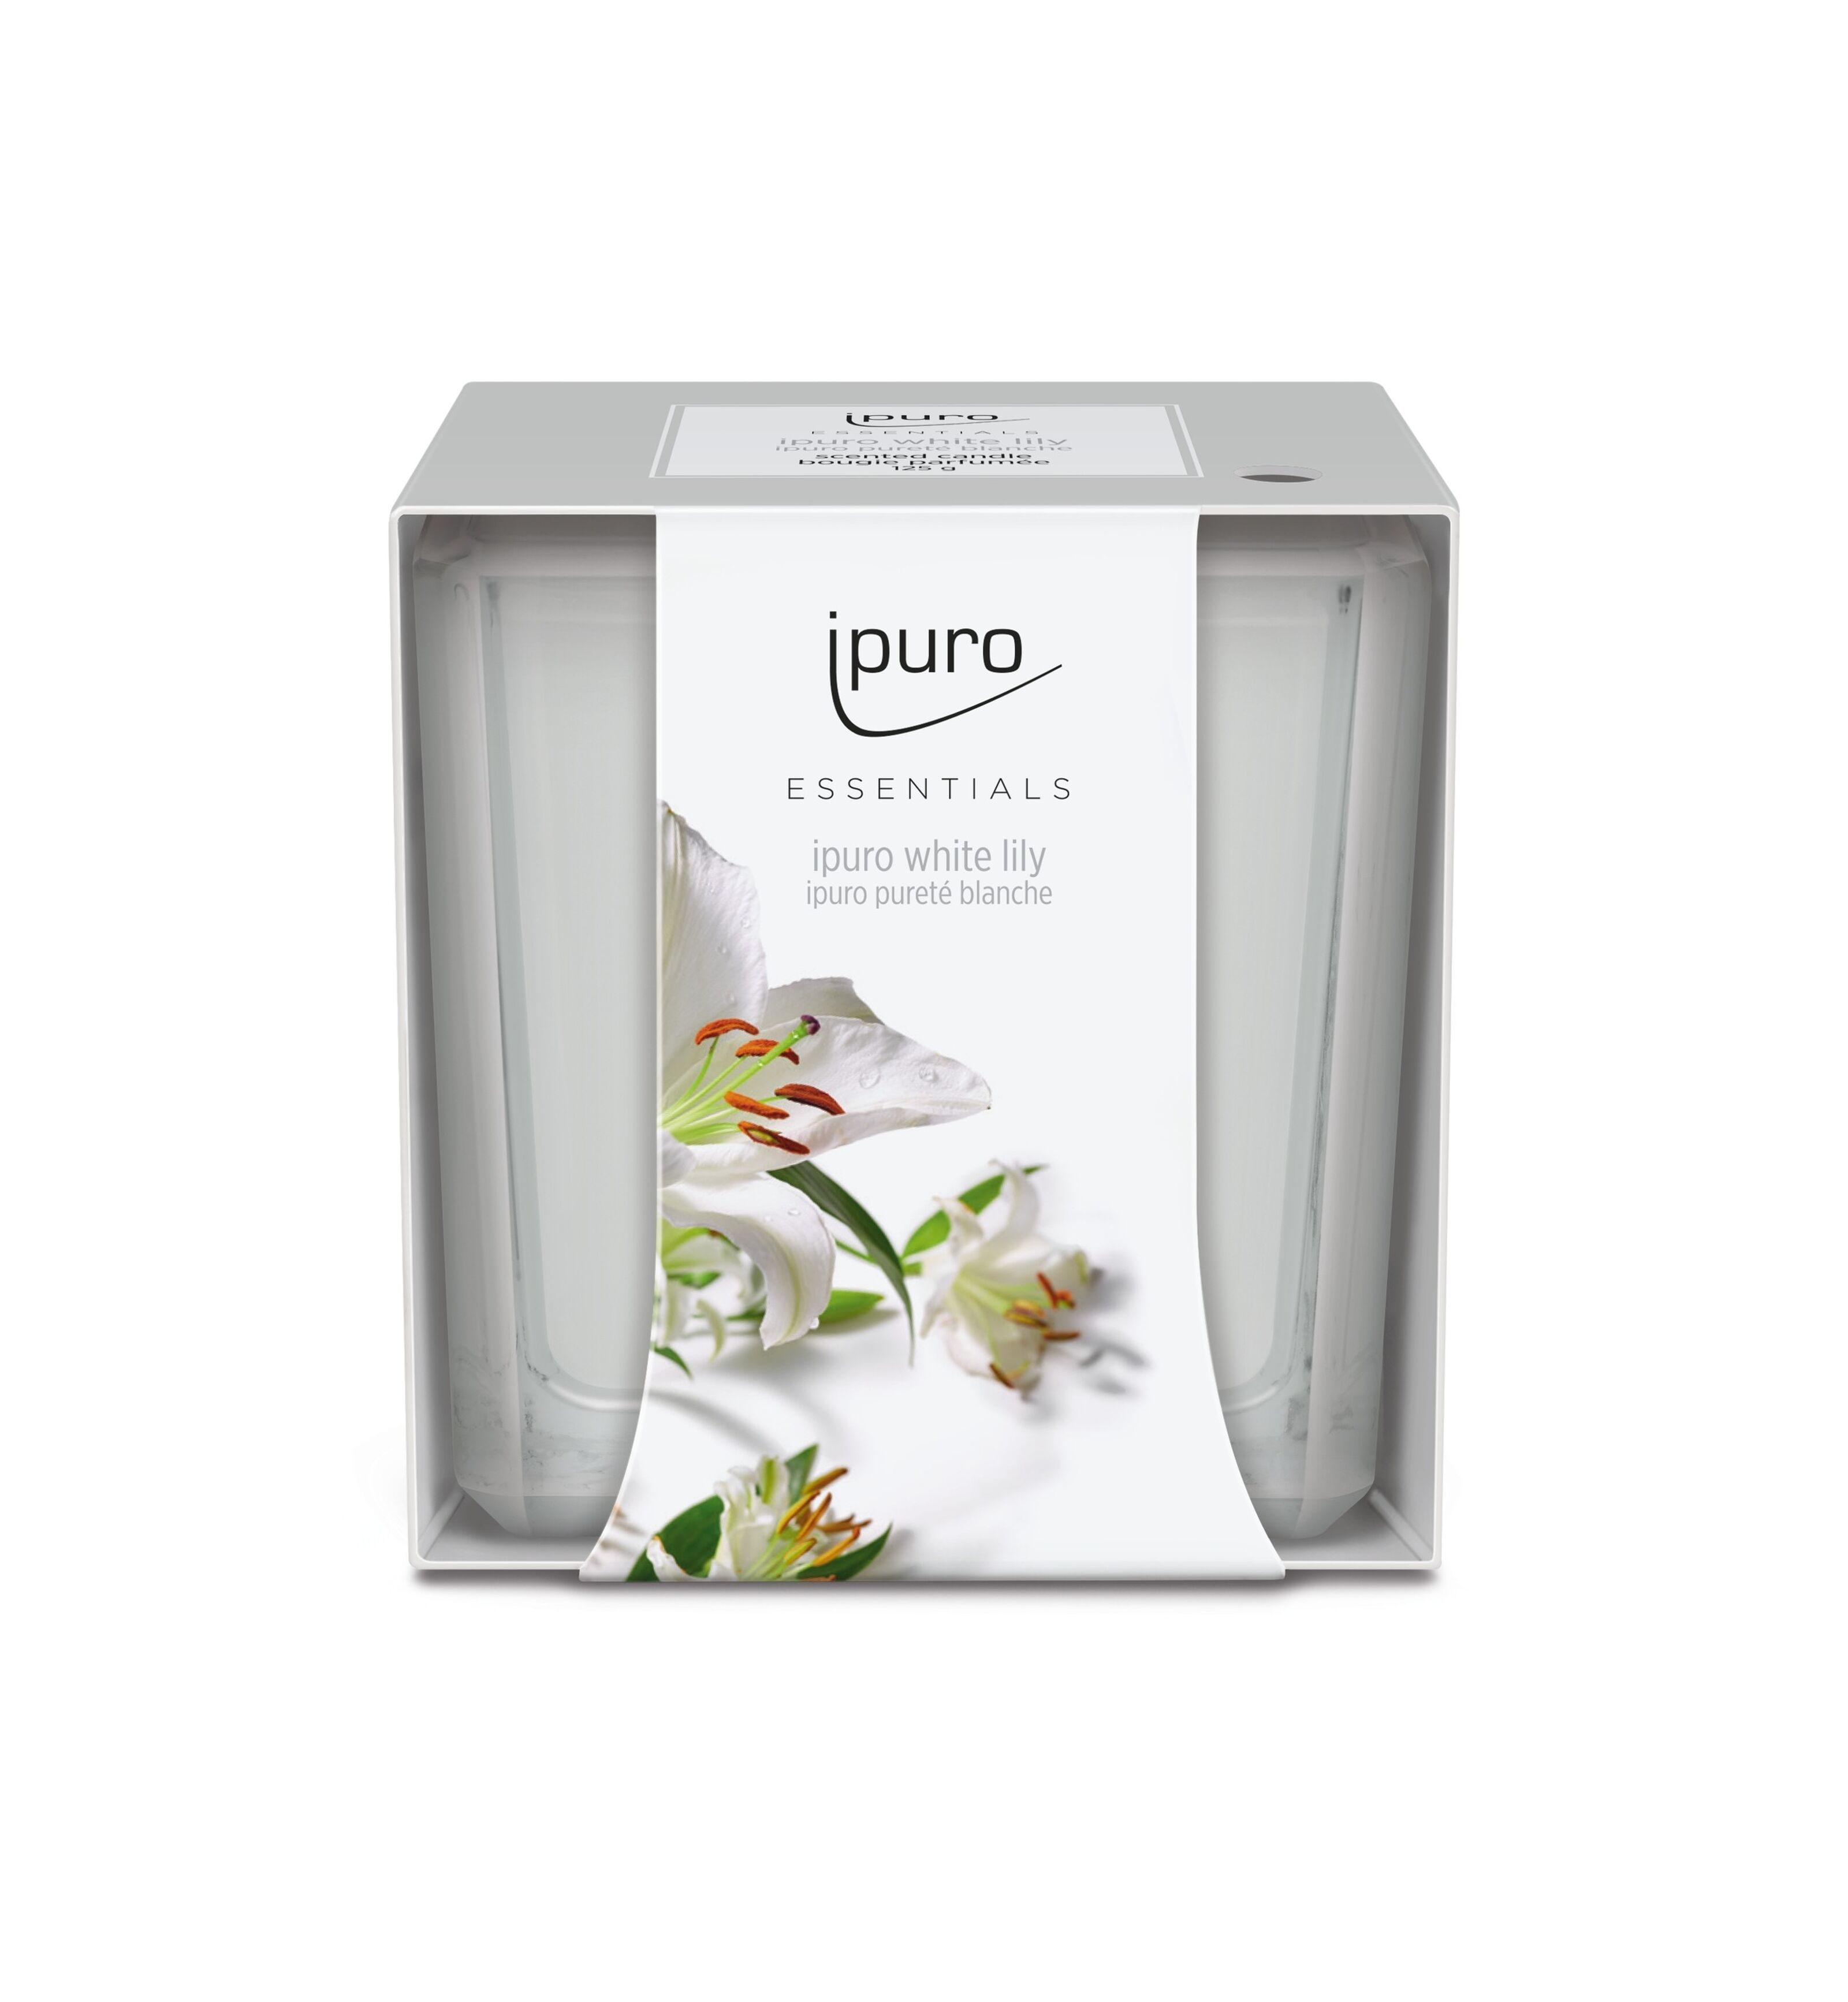 ESSENTIALS ipuro white lily Autoduft – IPURO